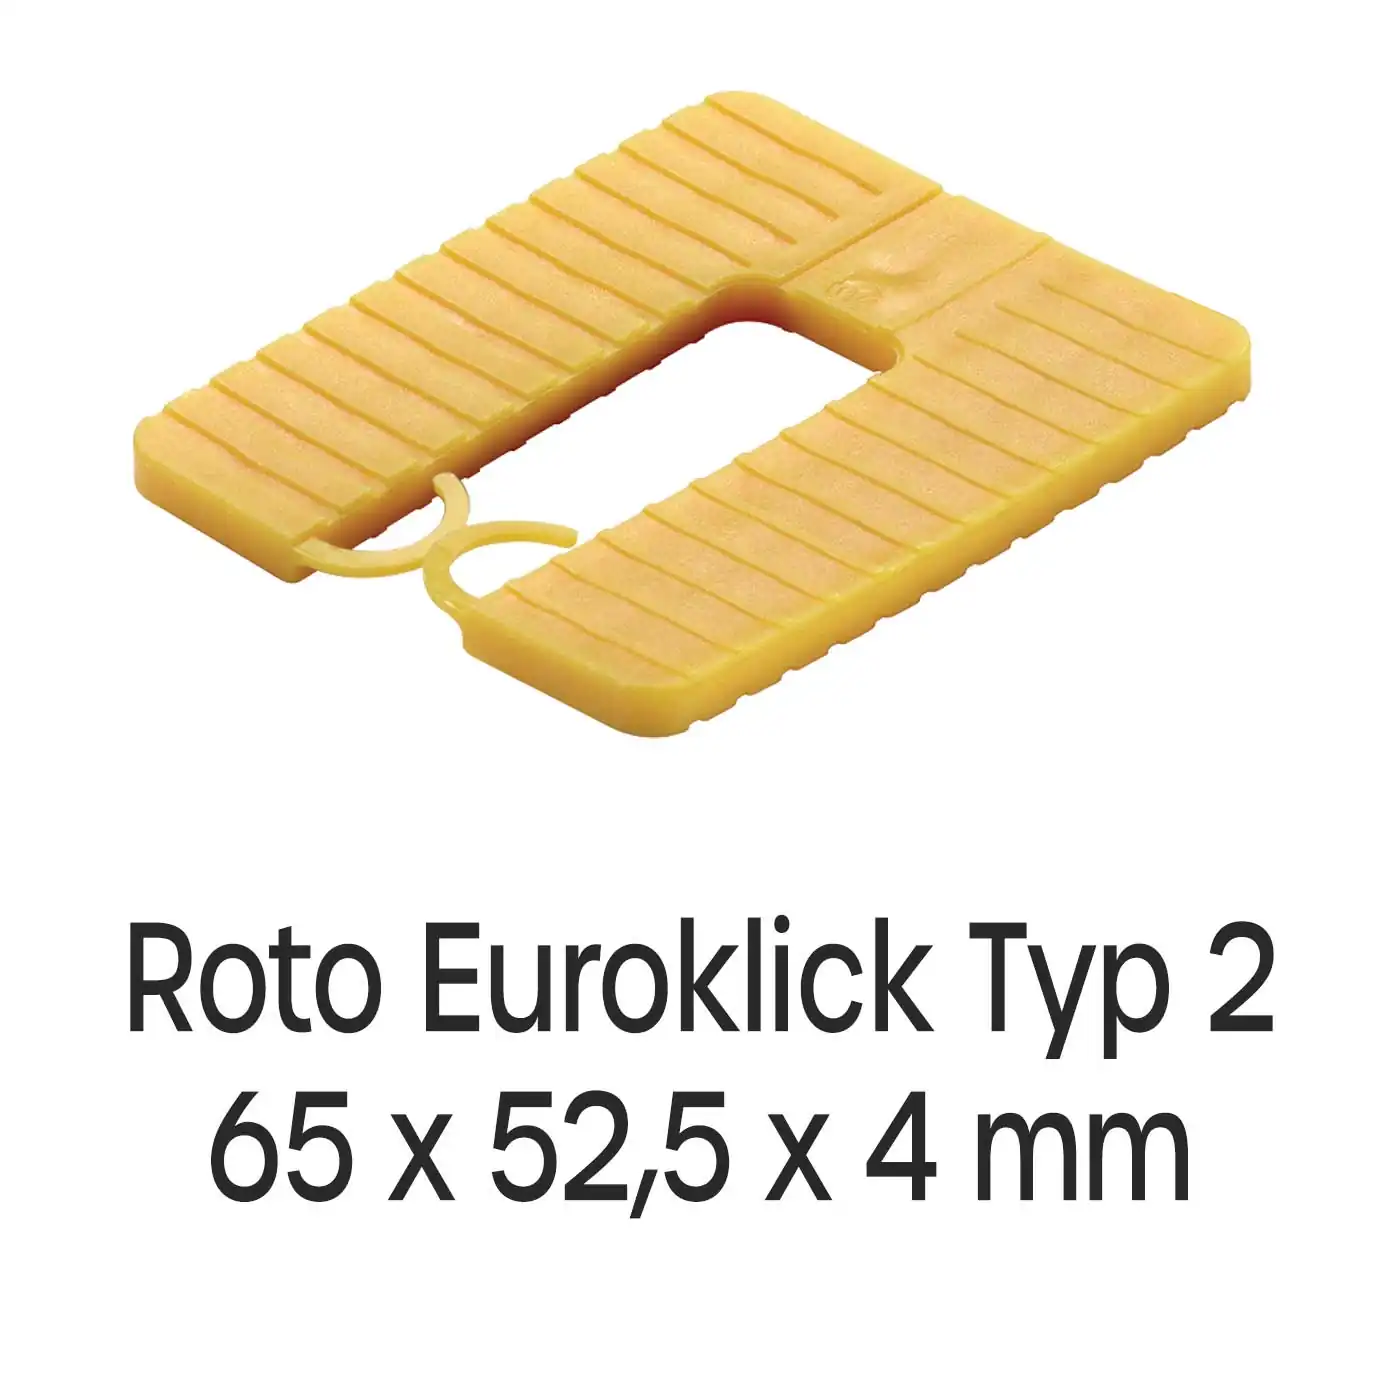 Distanzplatten Roto Euroklick Typ 2 65 x 52,5 x 4 mm 1000 Stück